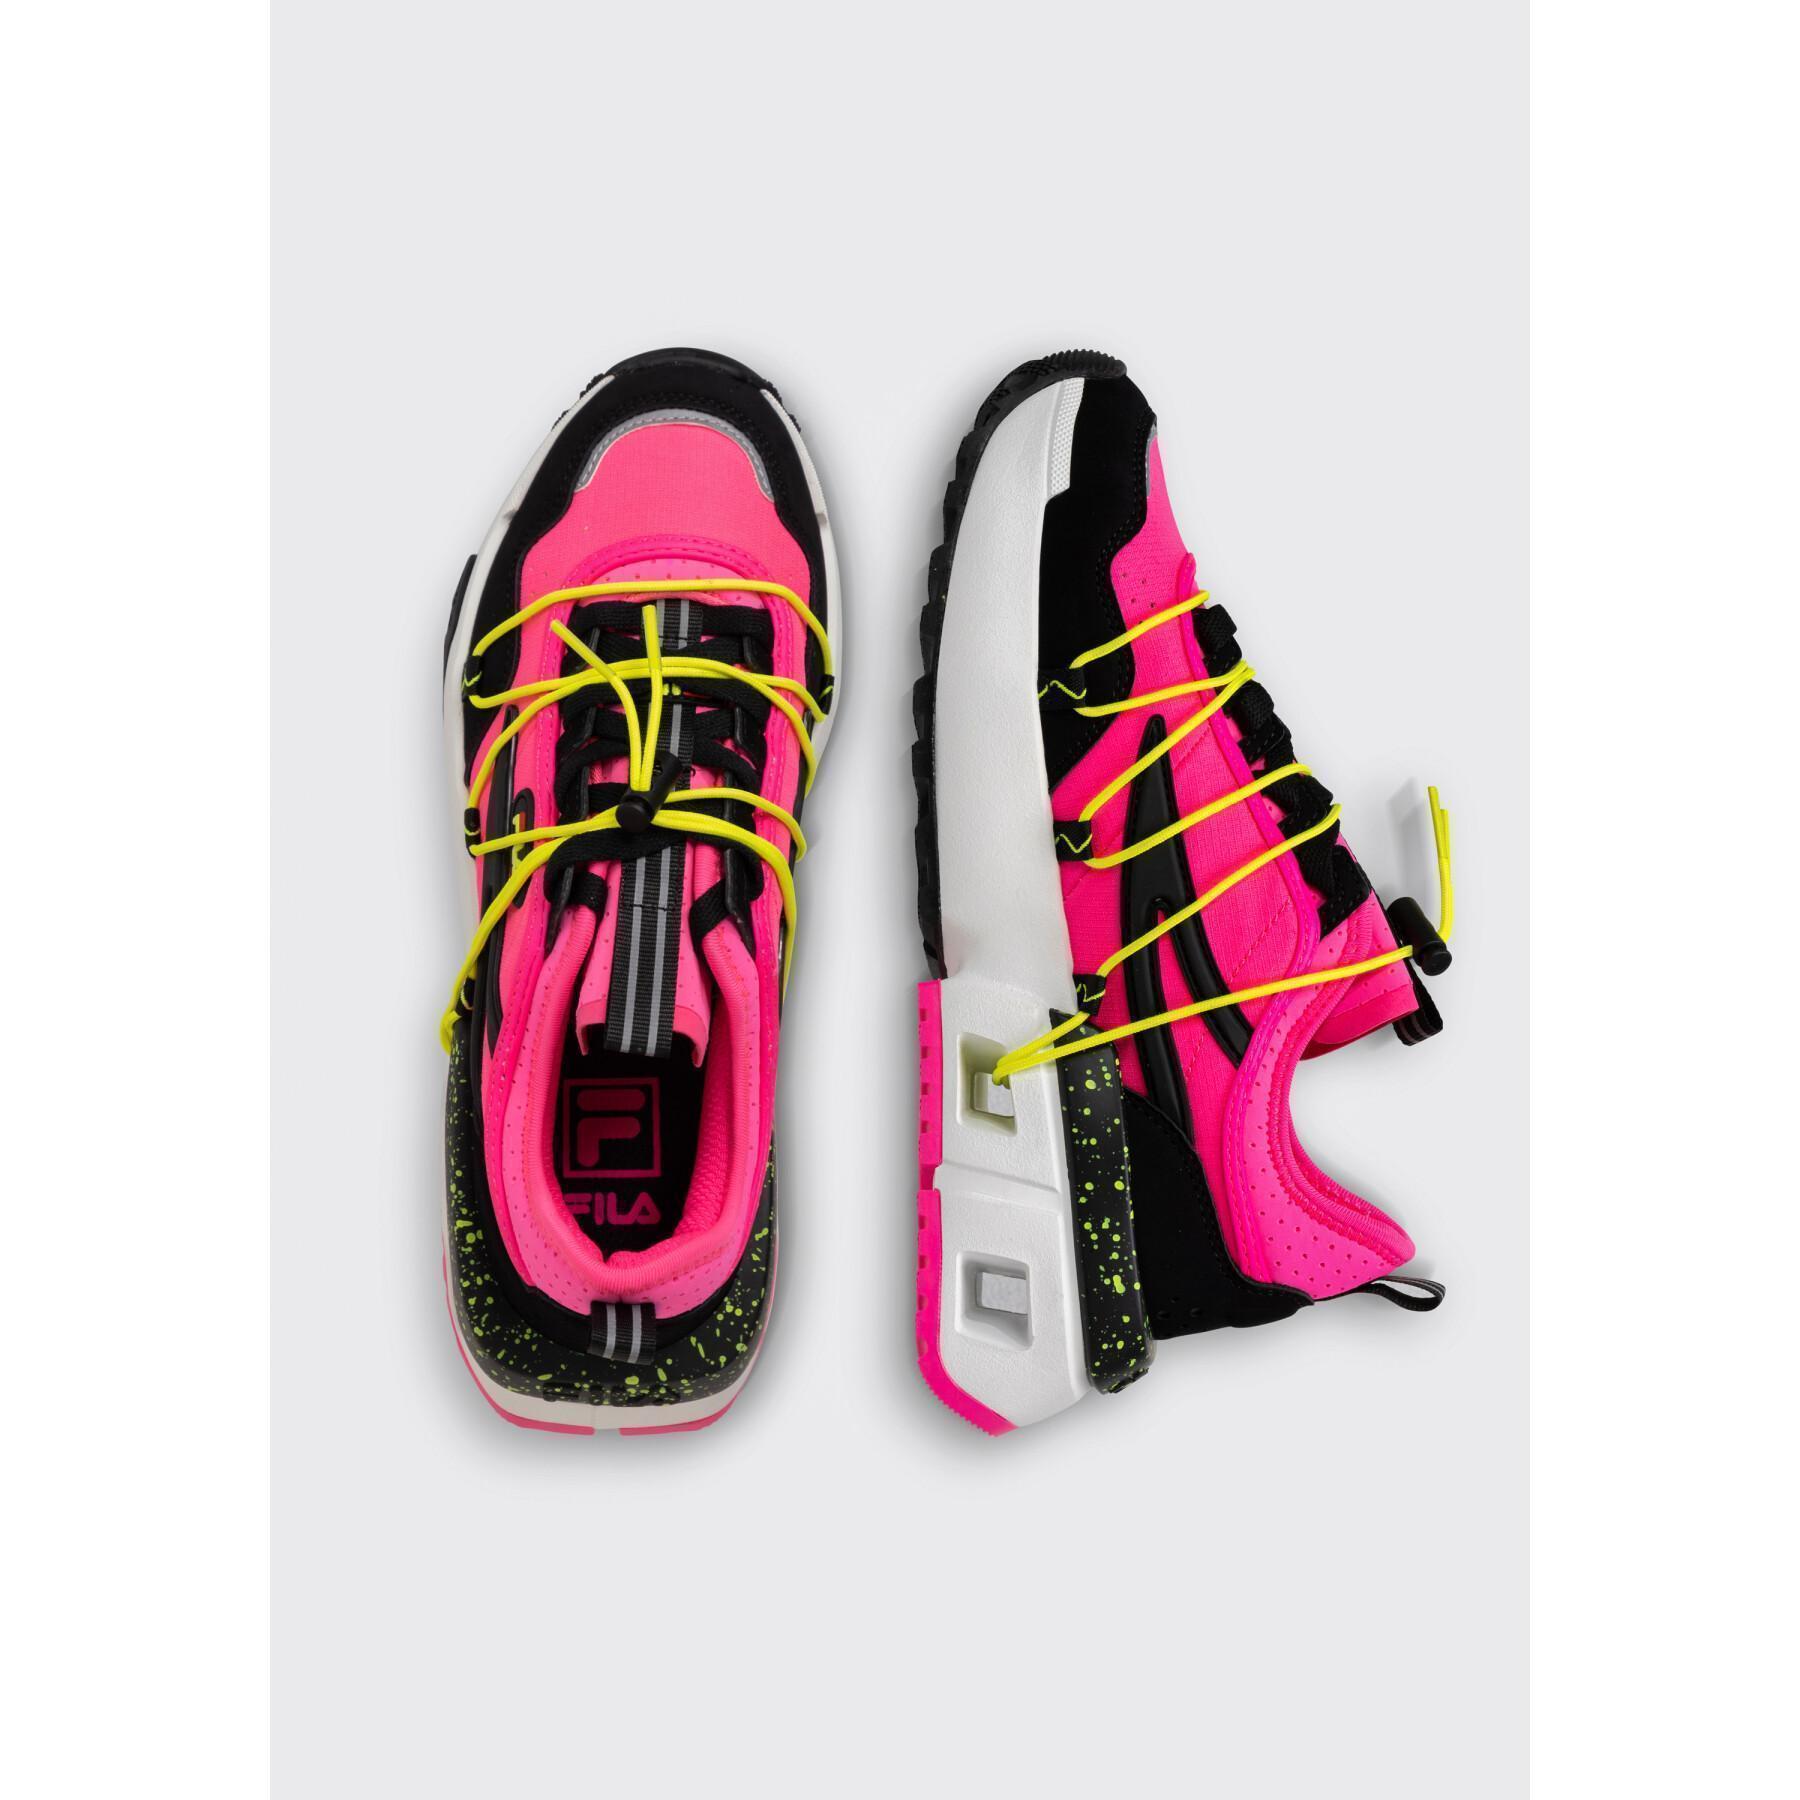 Zapatillas de deporte para mujer Fila UPGR8 H